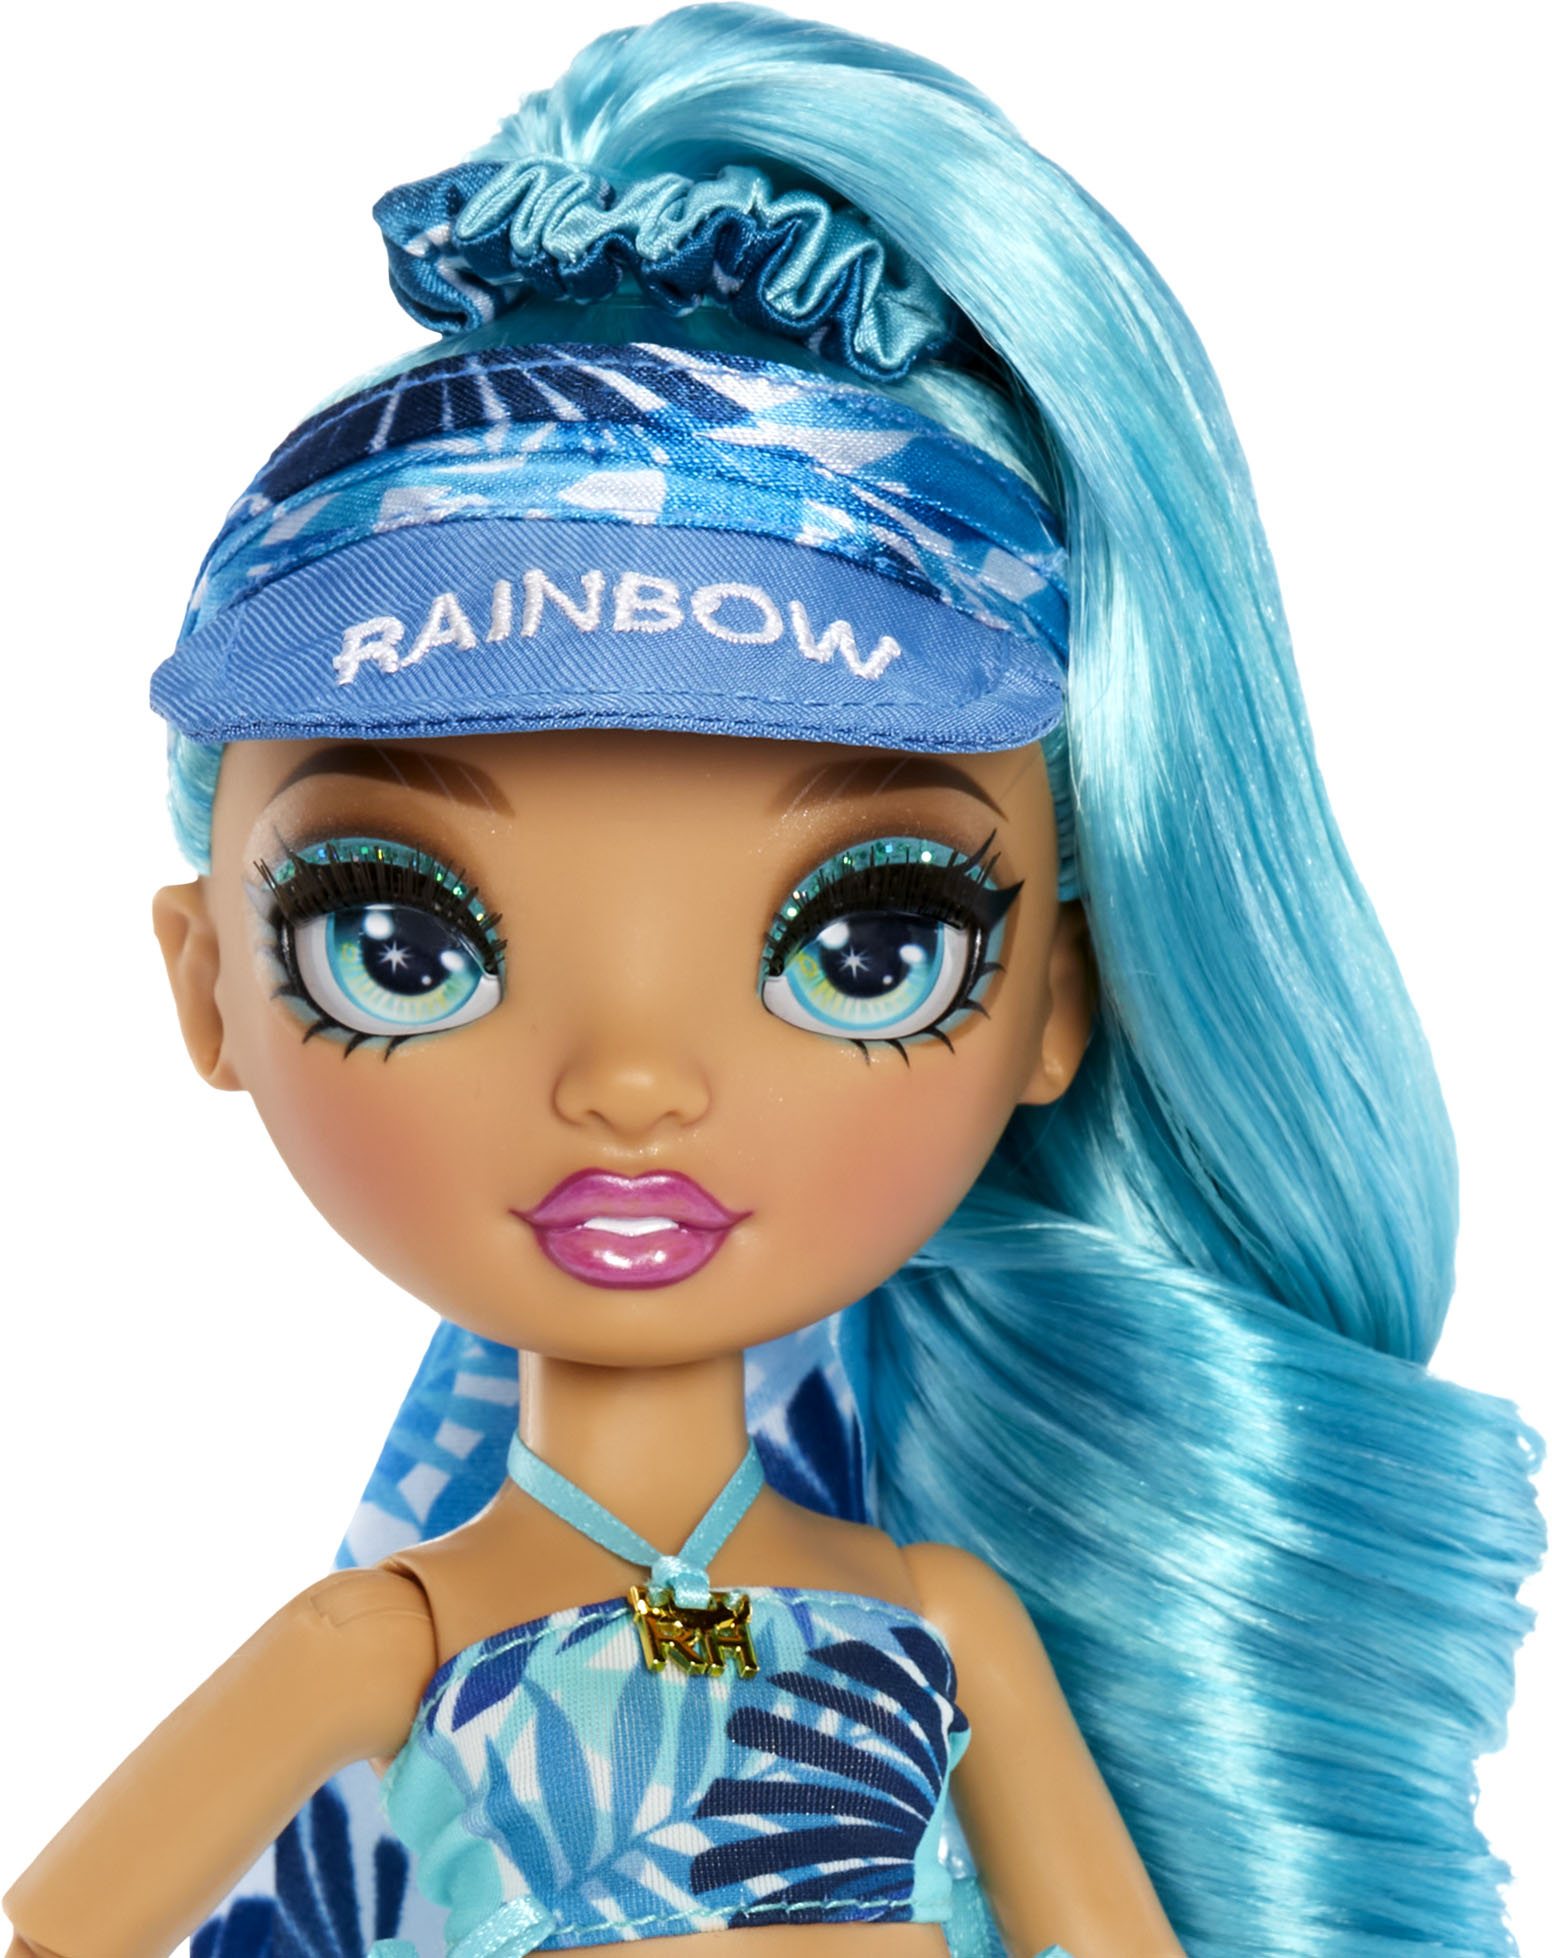 Capri, 18-inch Multicolored Hair Doll